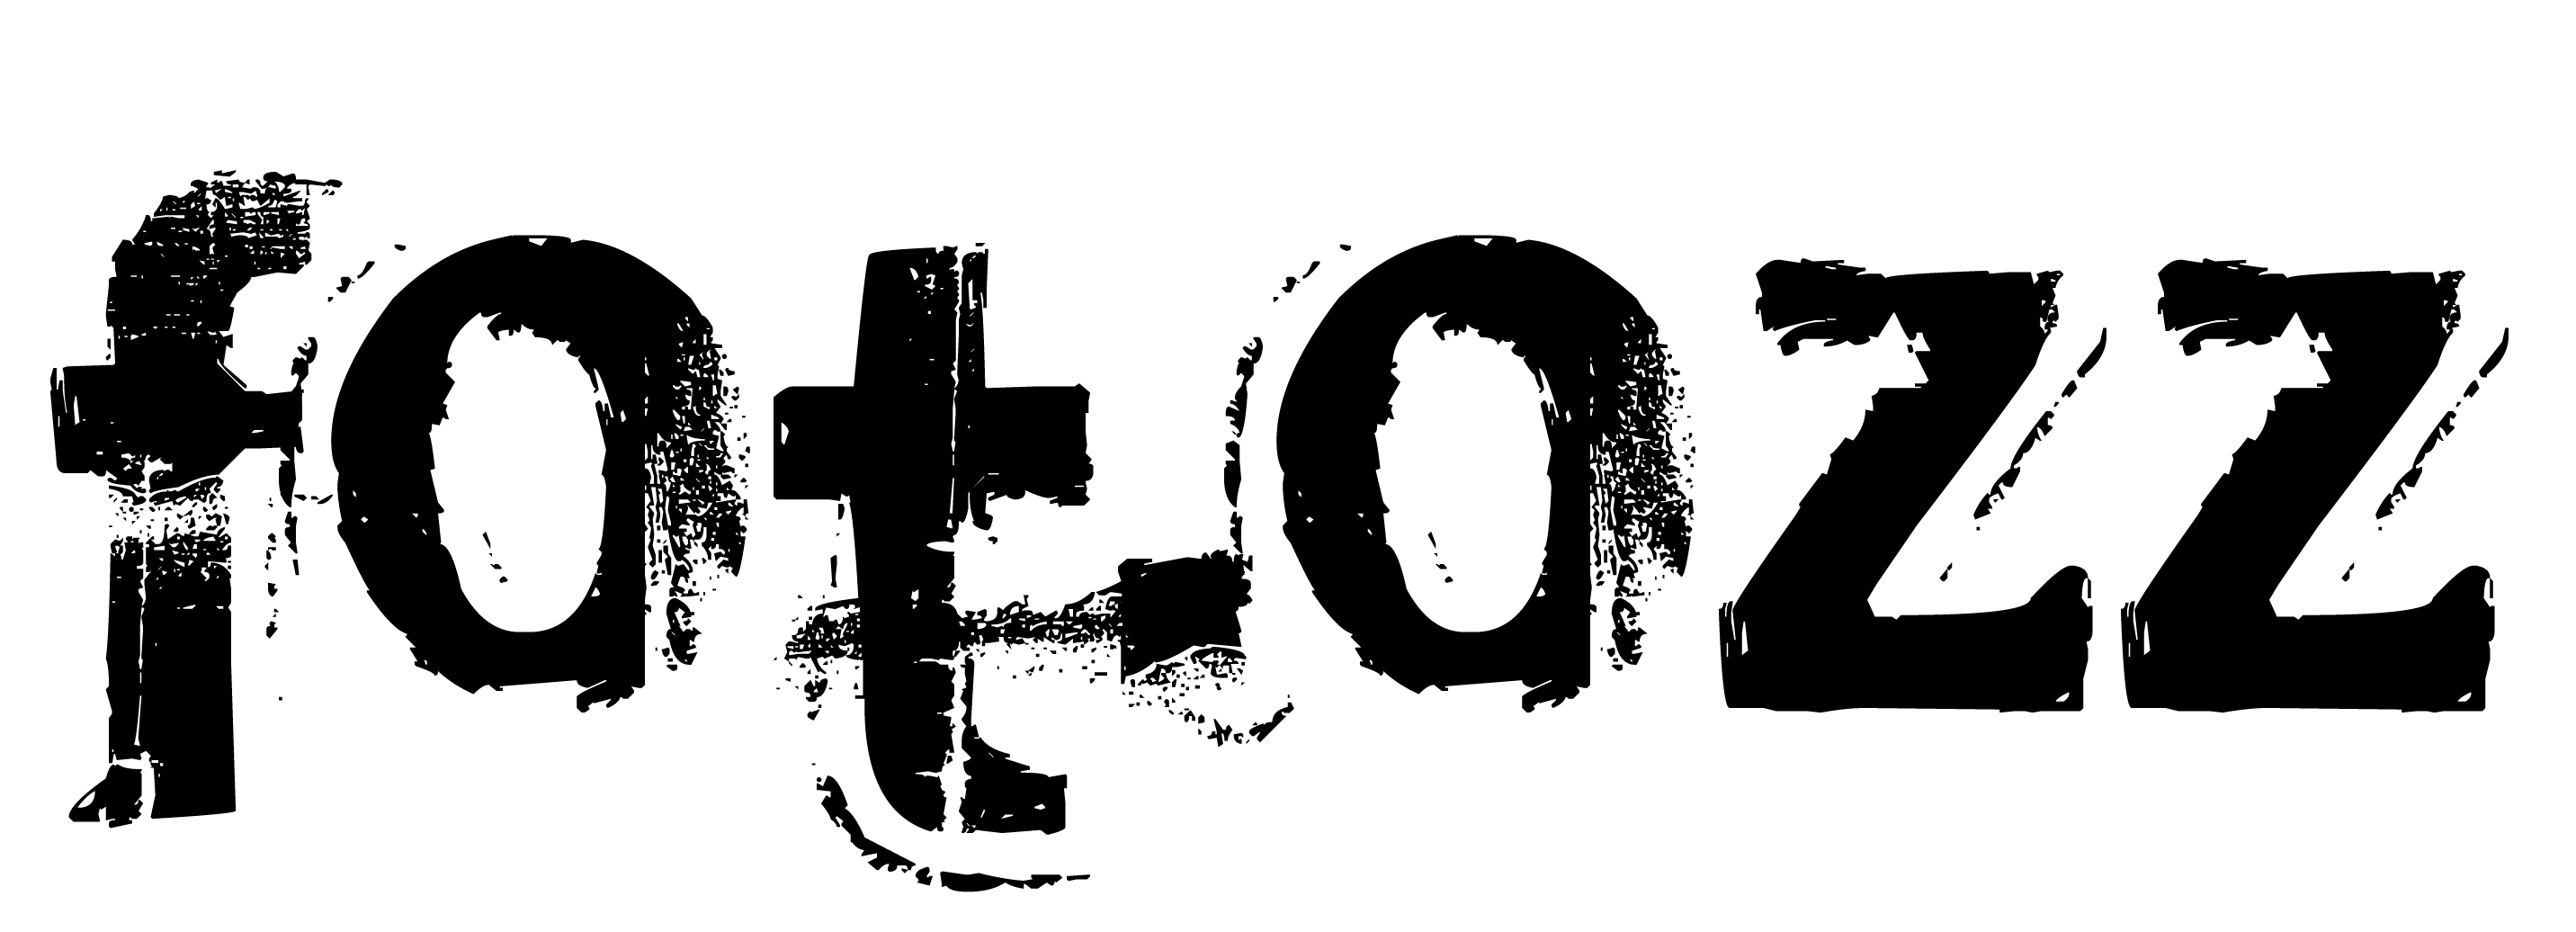 fotozz logo